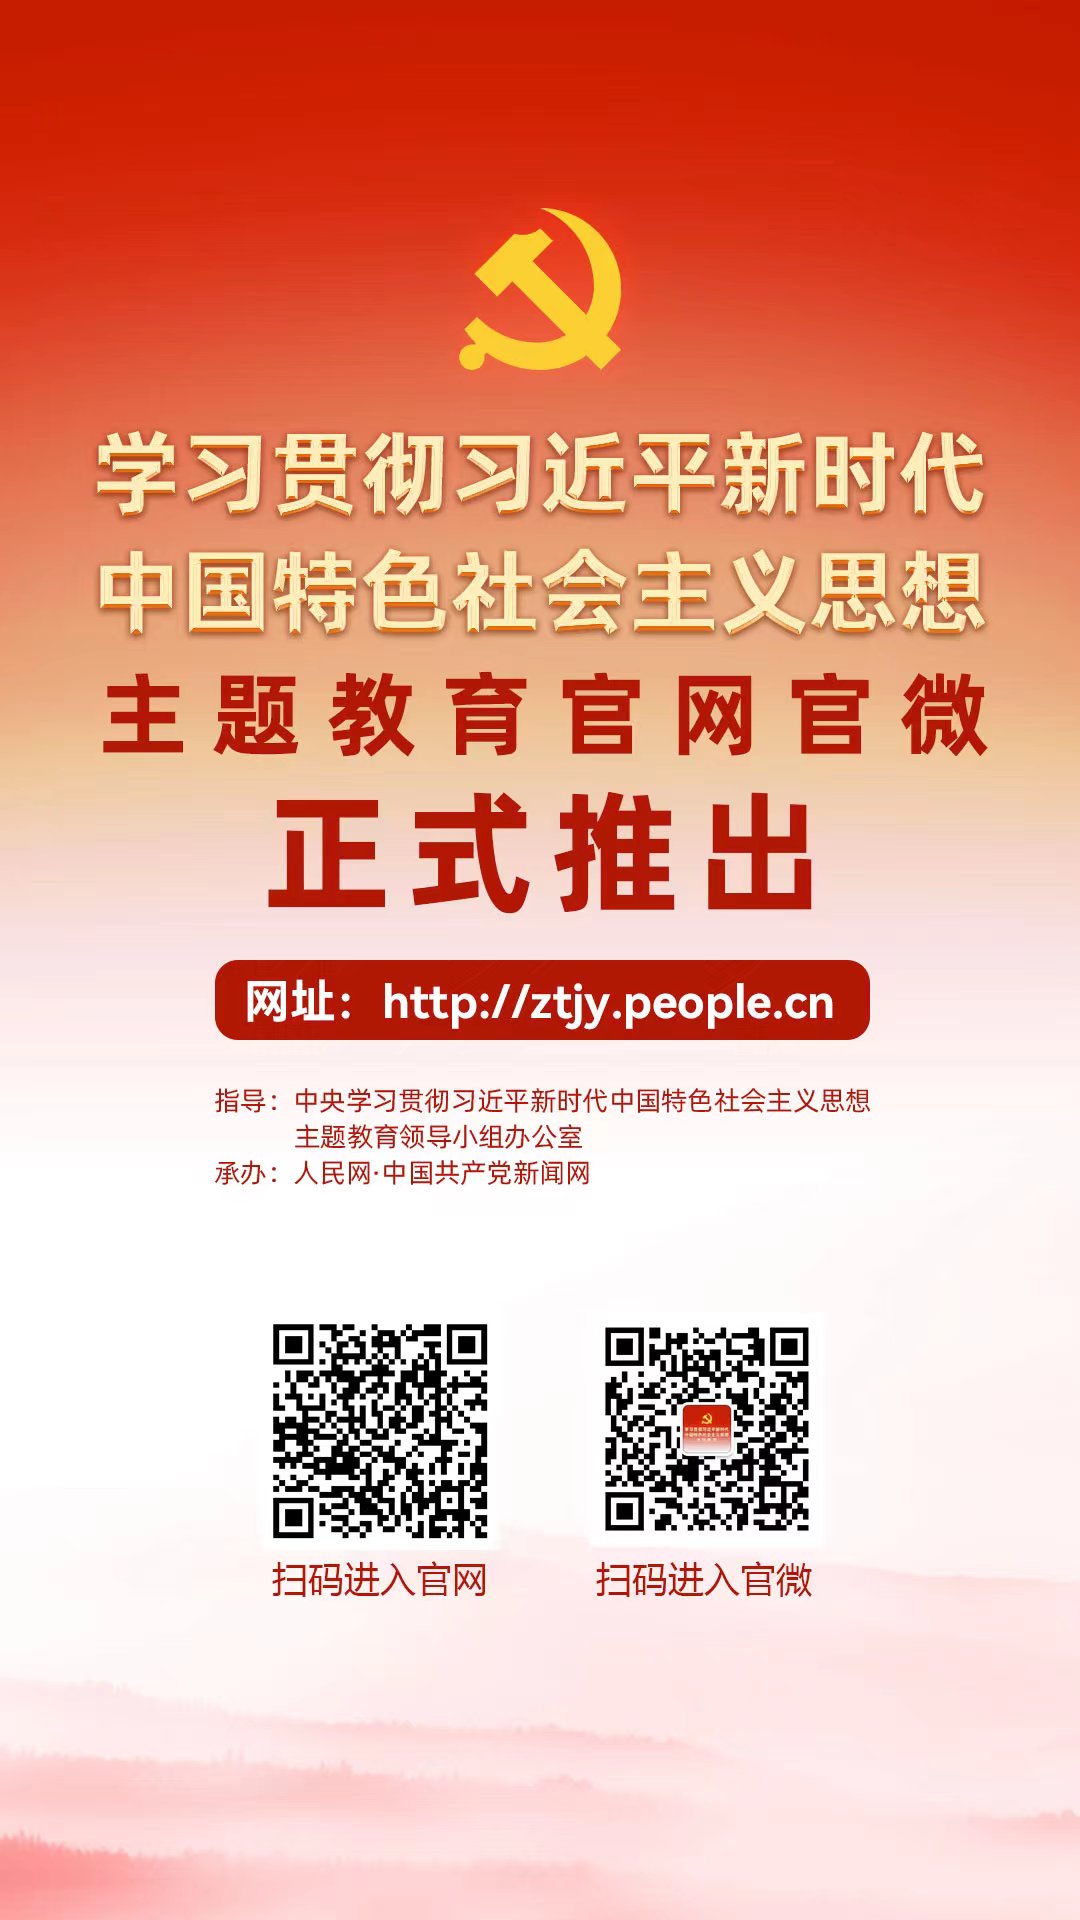 学习贯彻习近平新时代中国特色社会主义思想主题教育官网正式上线